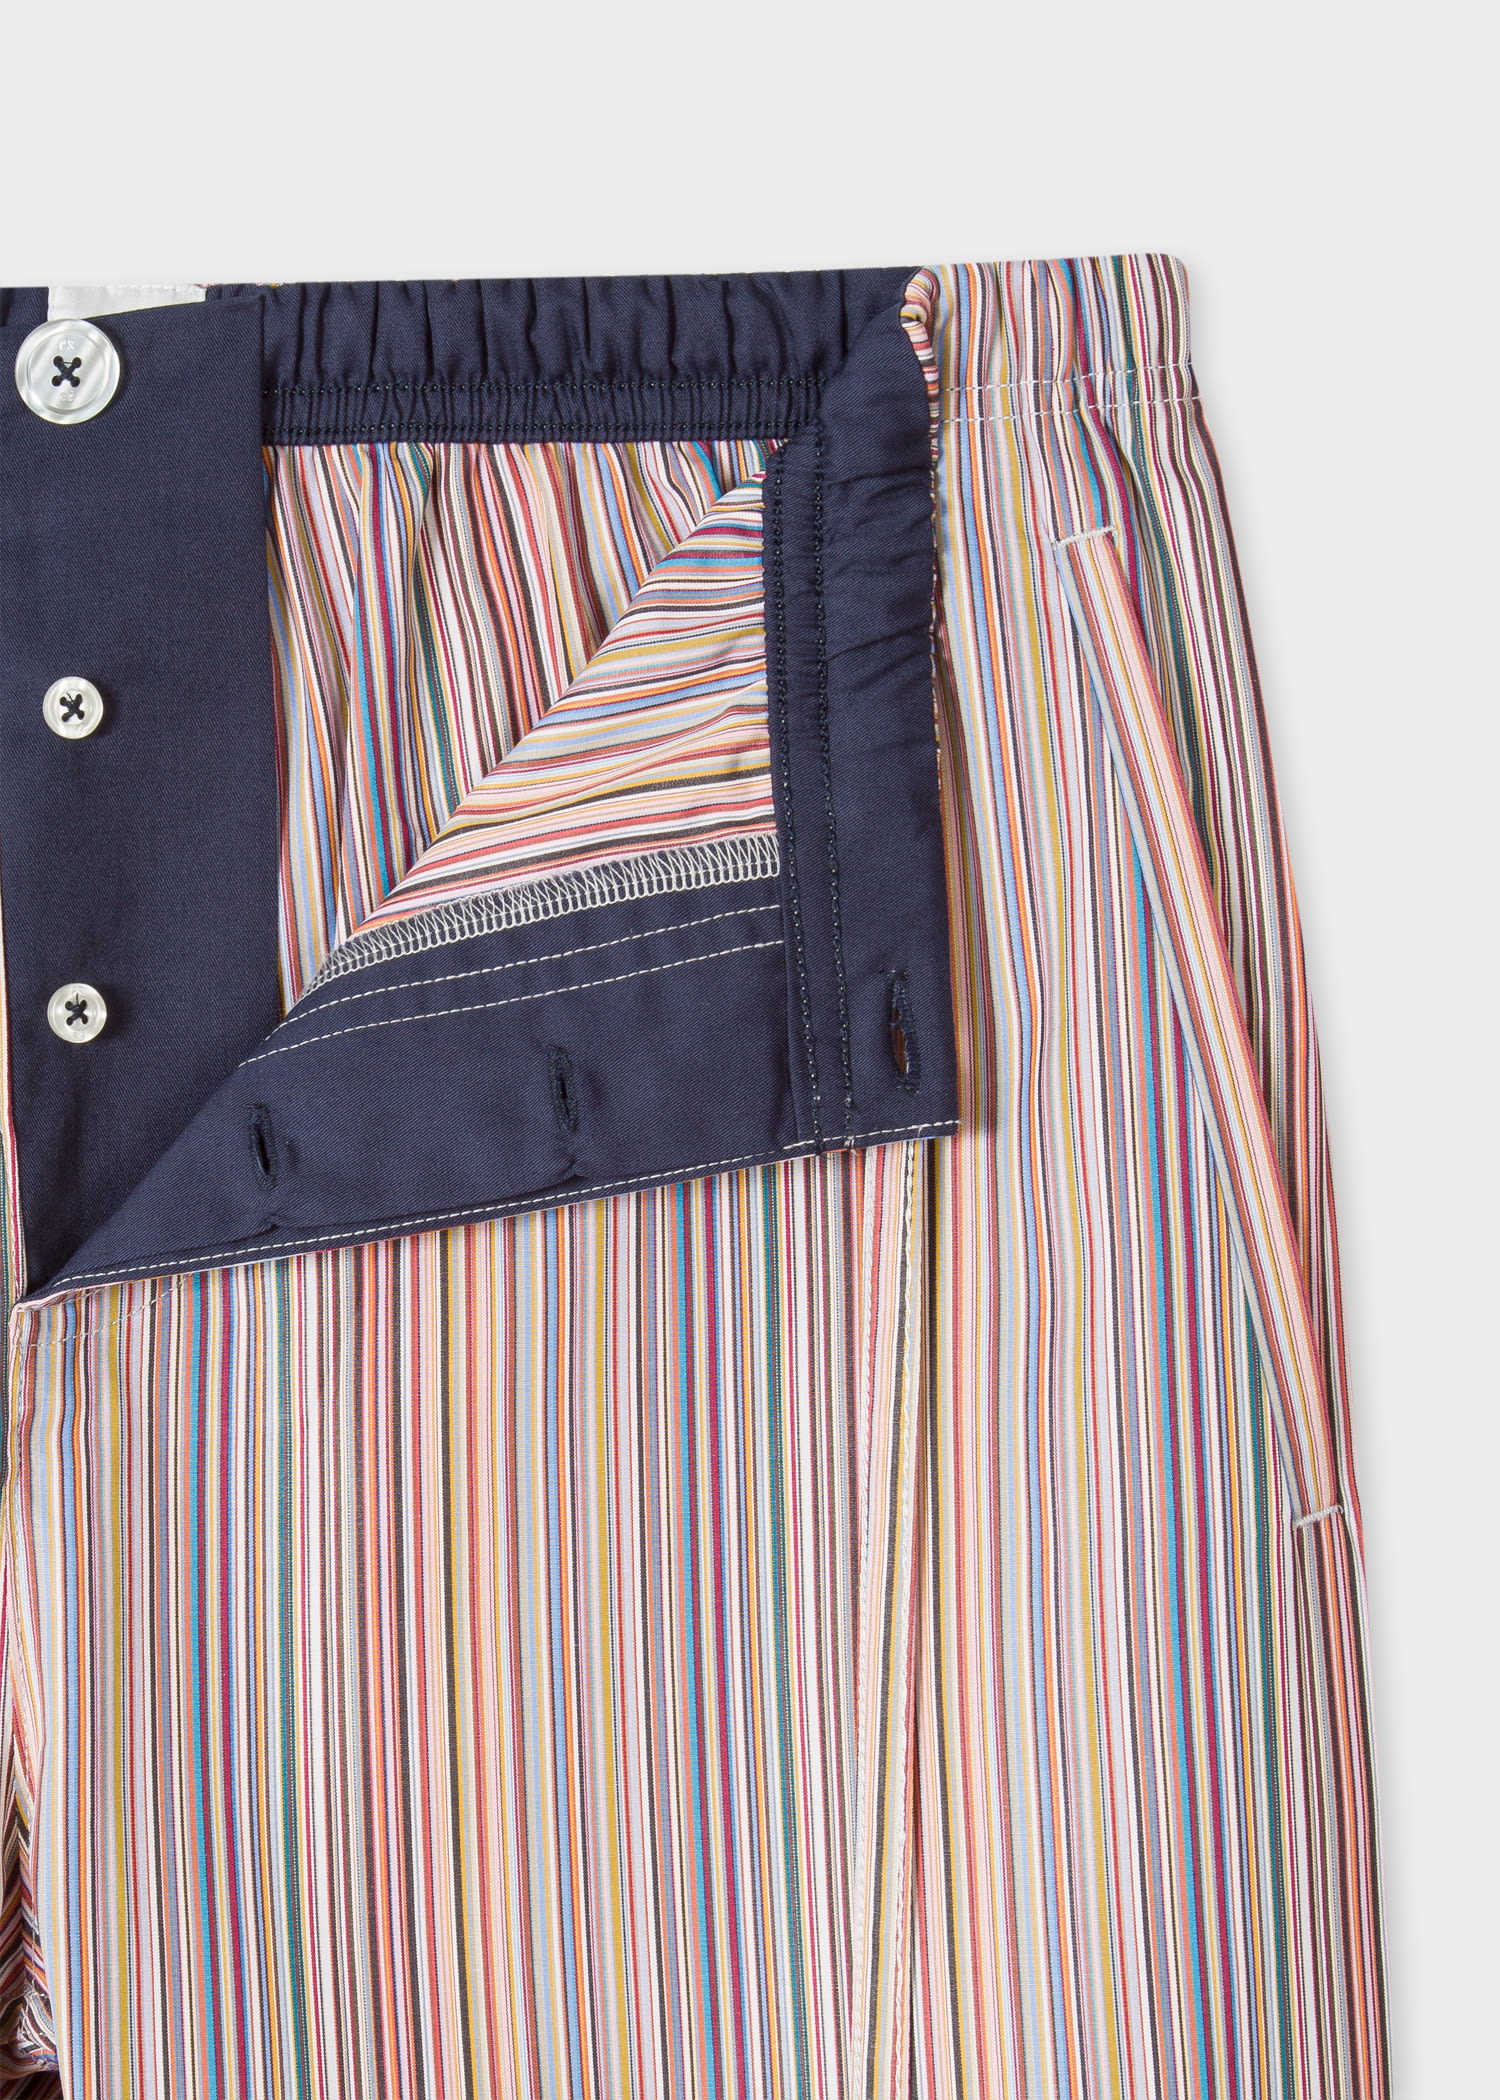 PAUL SMITH mens striped cotton pyjamas PJs Artist Stripe MEDIUM